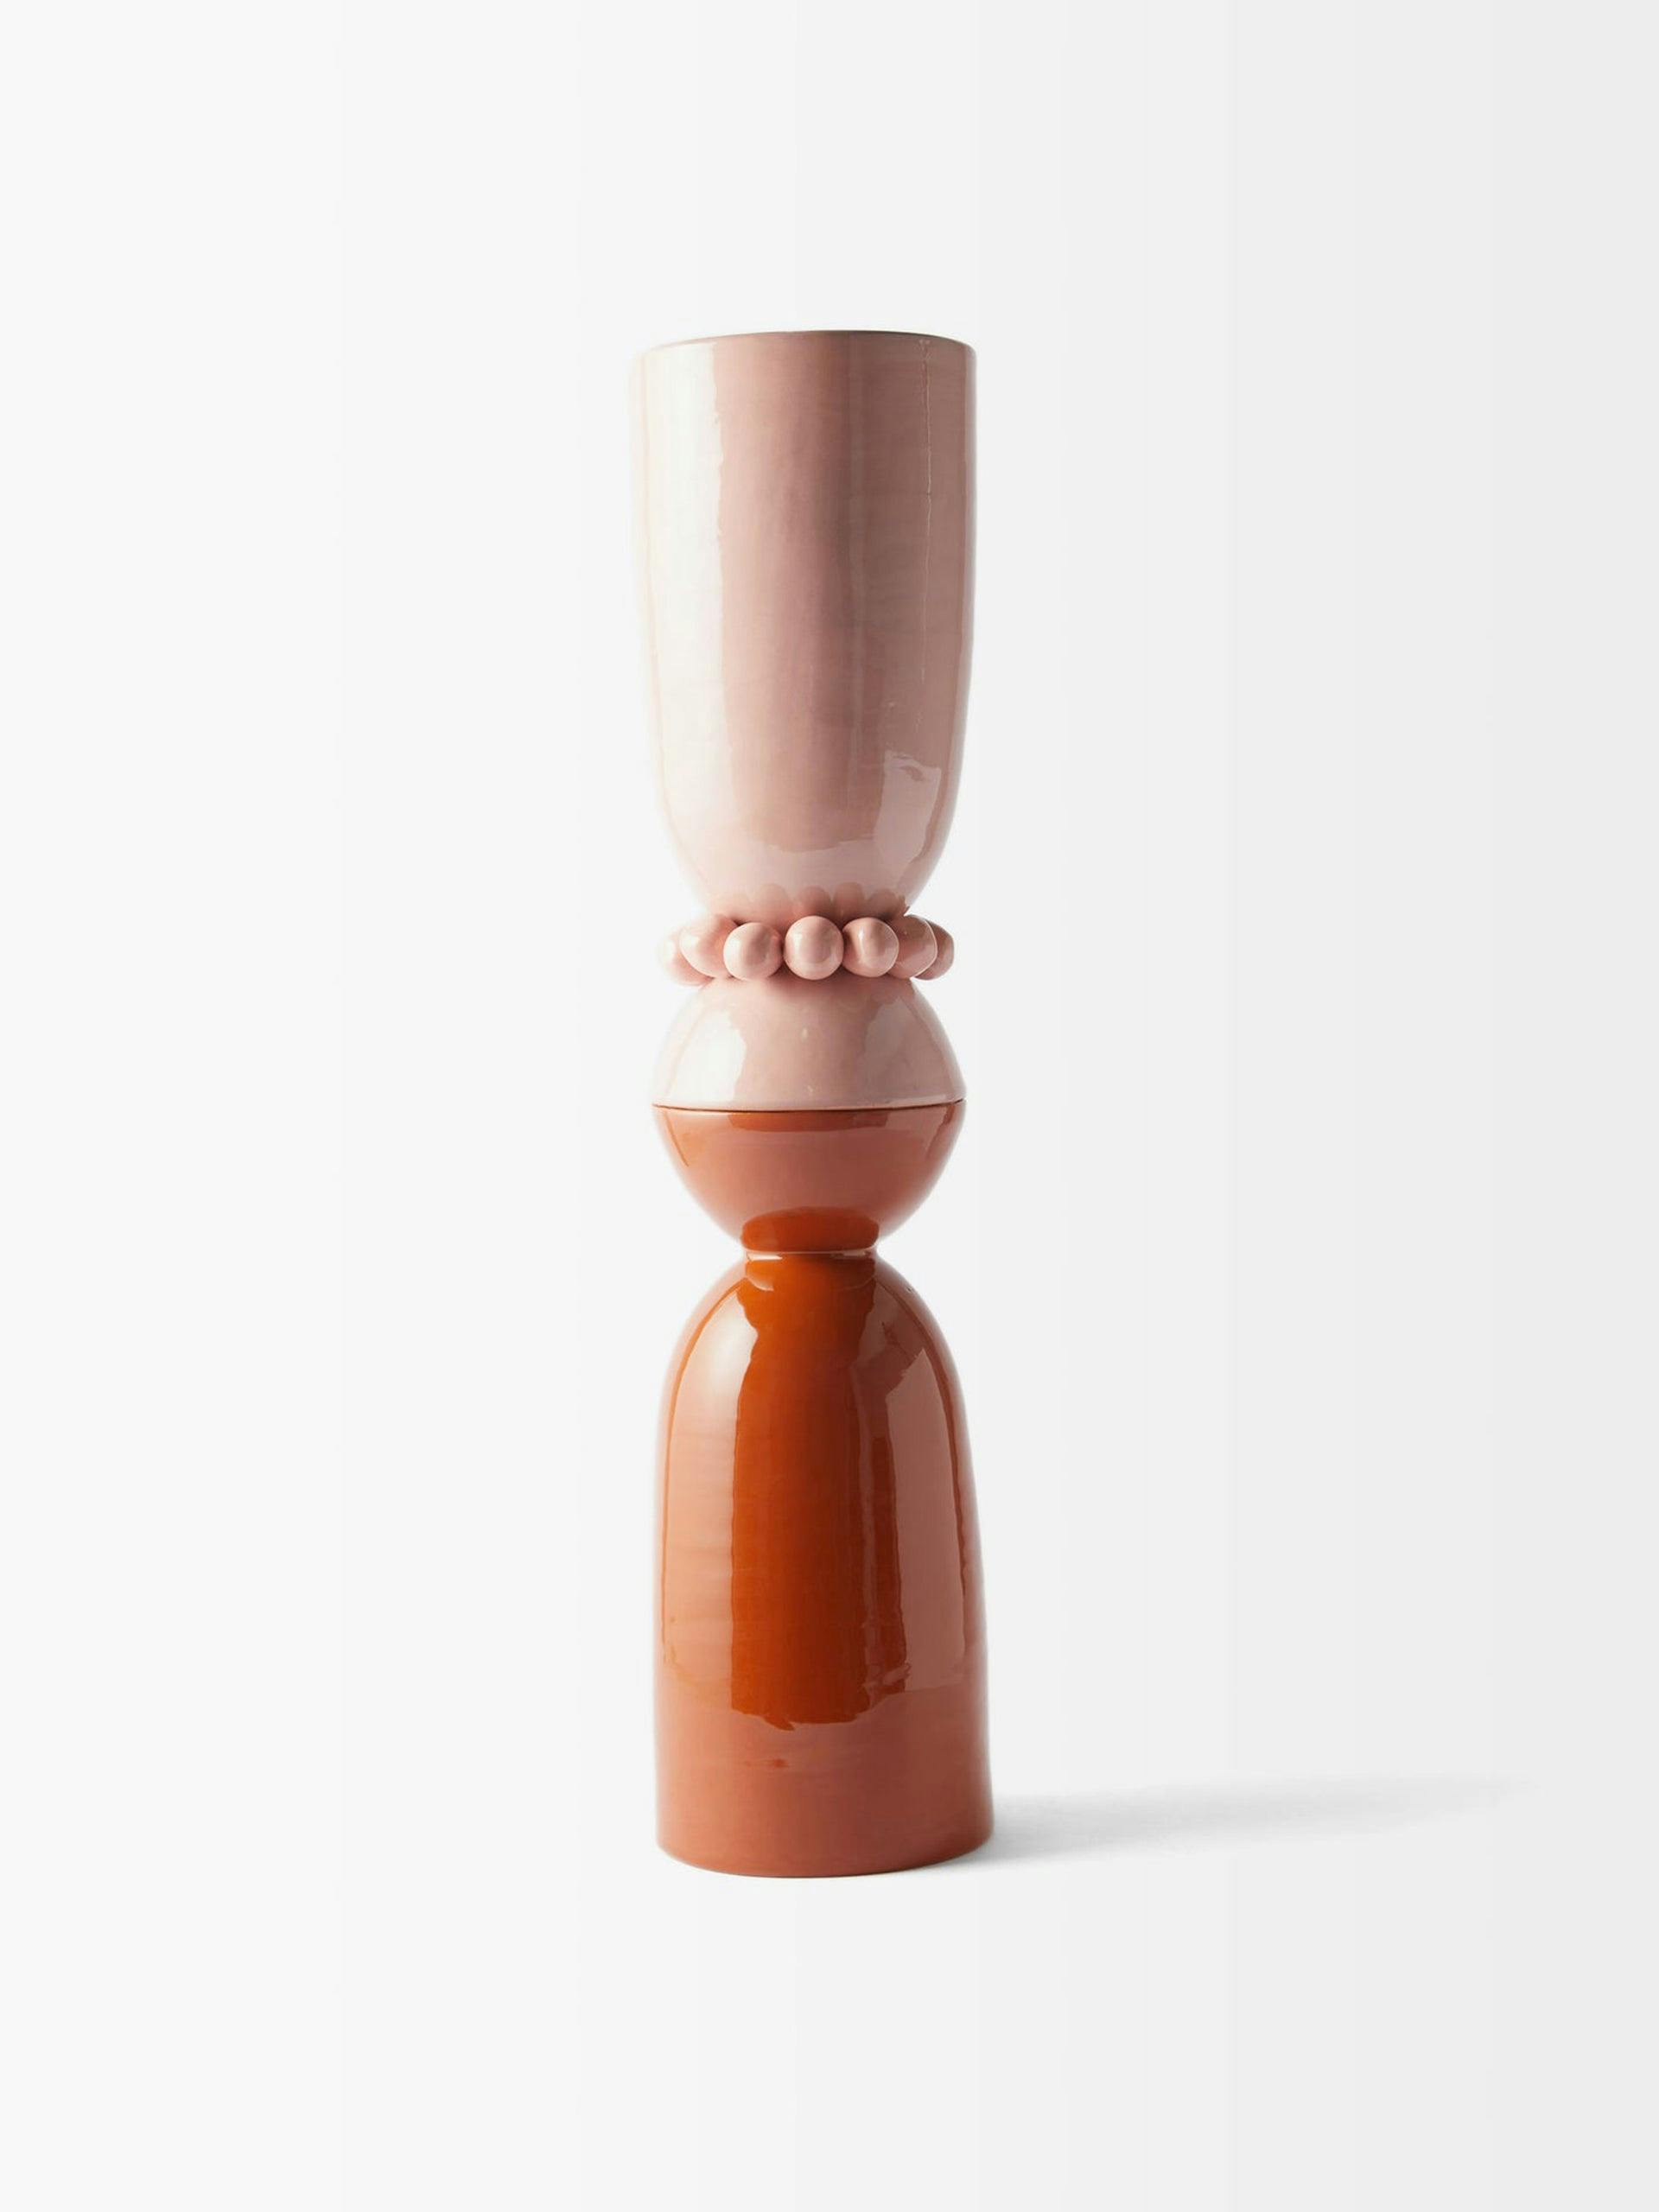 Beaded ceramic vase